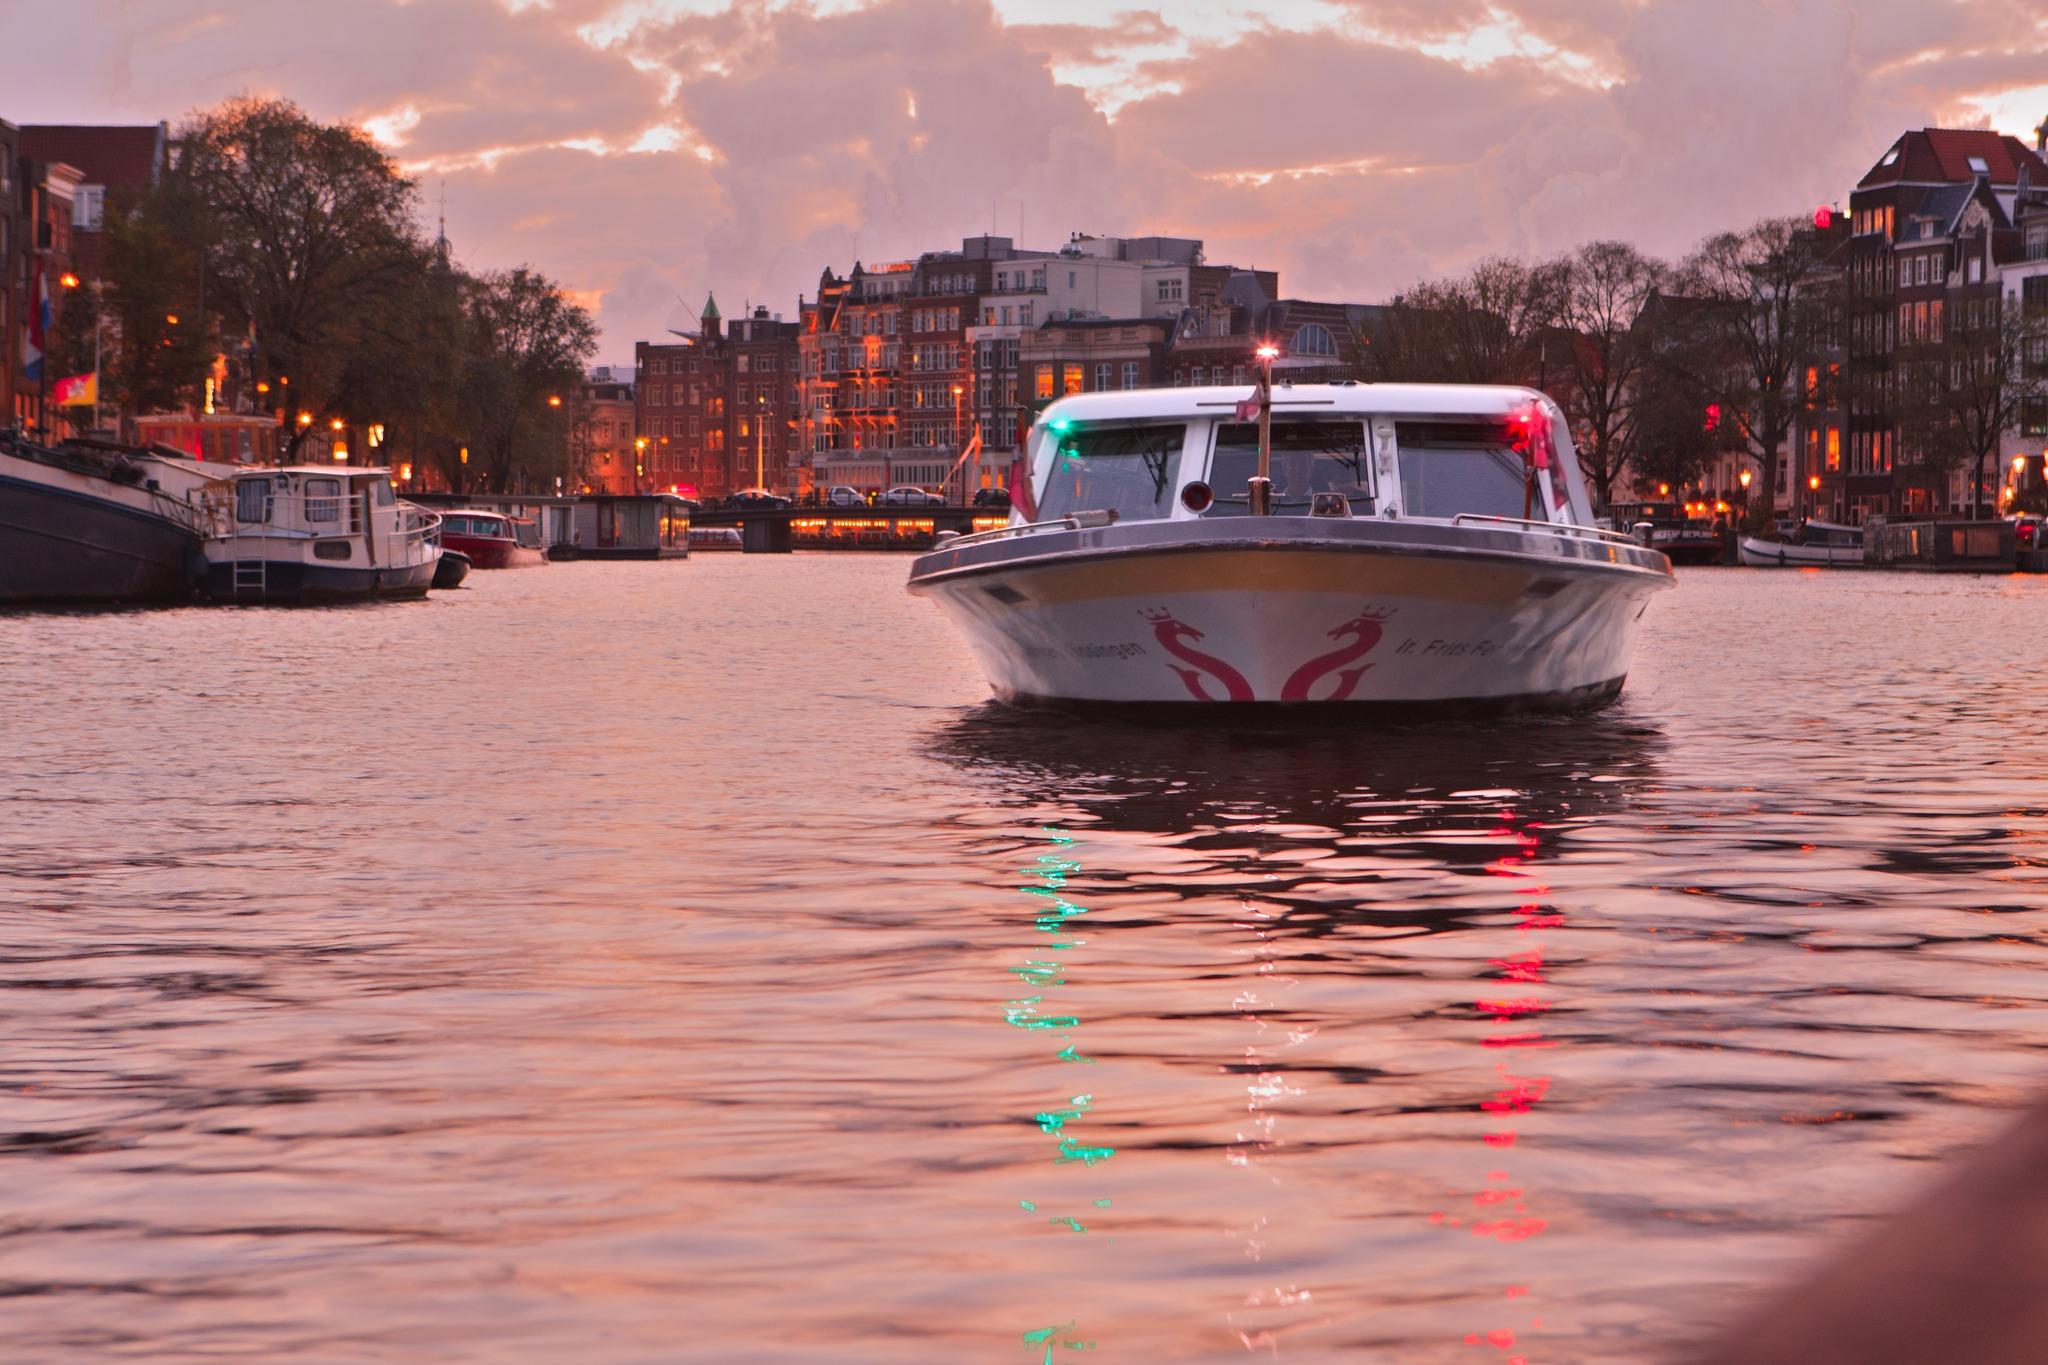 Rondvaart door de grachten met Canal Tours Amsterdam (60 min)